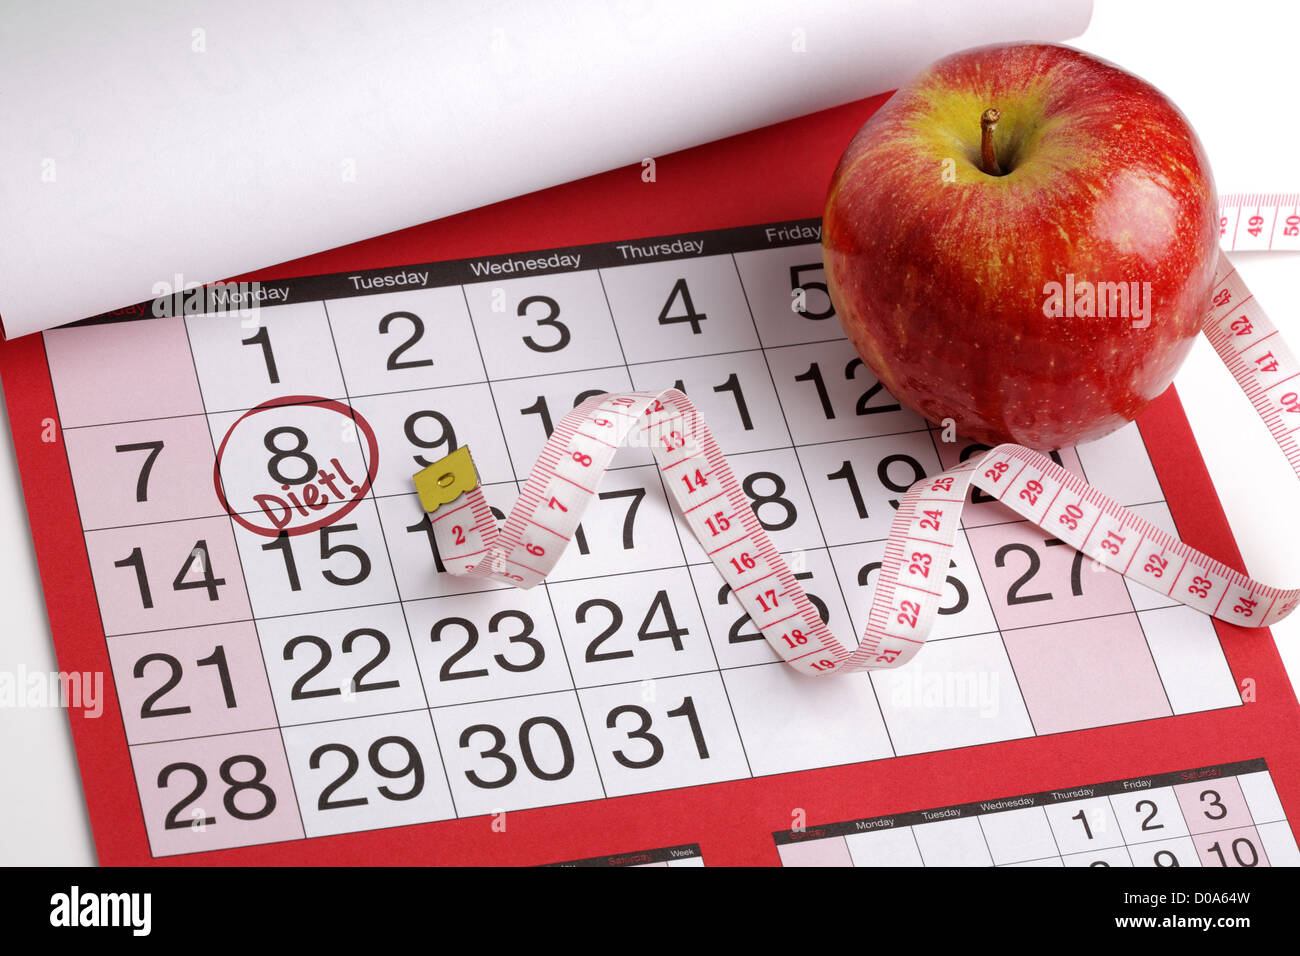 Calendar date to start a diet Stock Photo